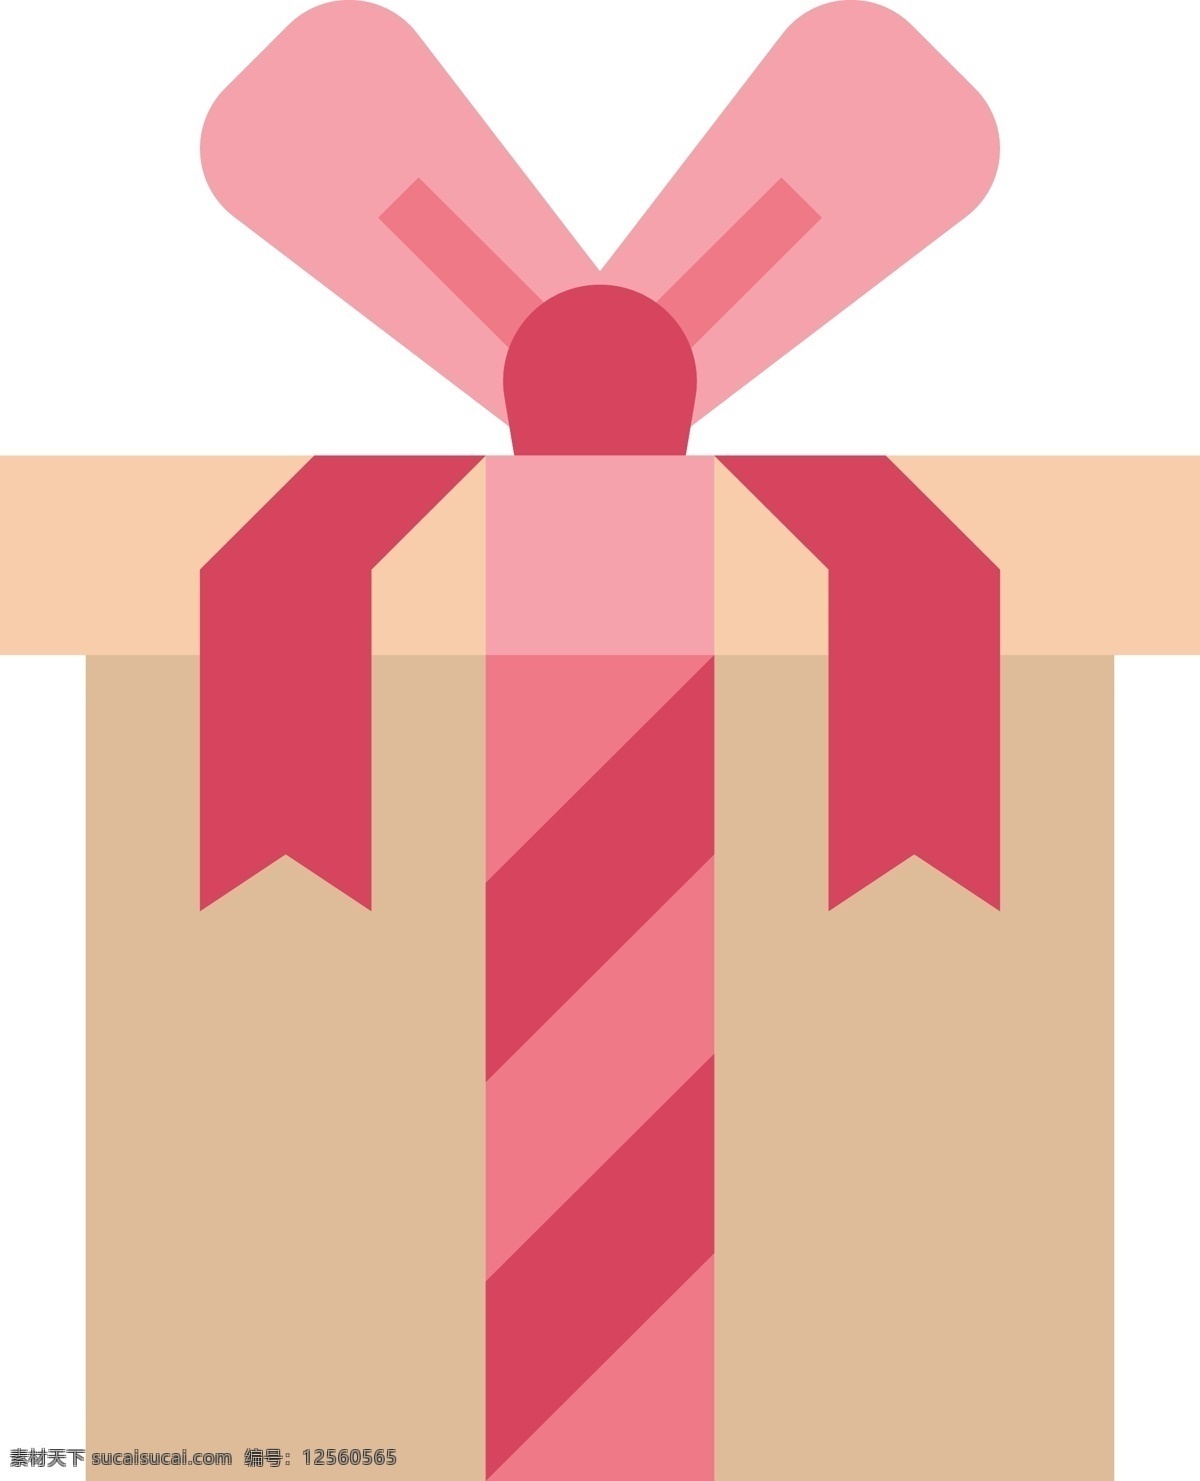 情人节 礼物 盒 图标 礼物盒 爱人 爱情节日礼物 有趣的礼物盒 卡通图标插画 装饰png 矢量图